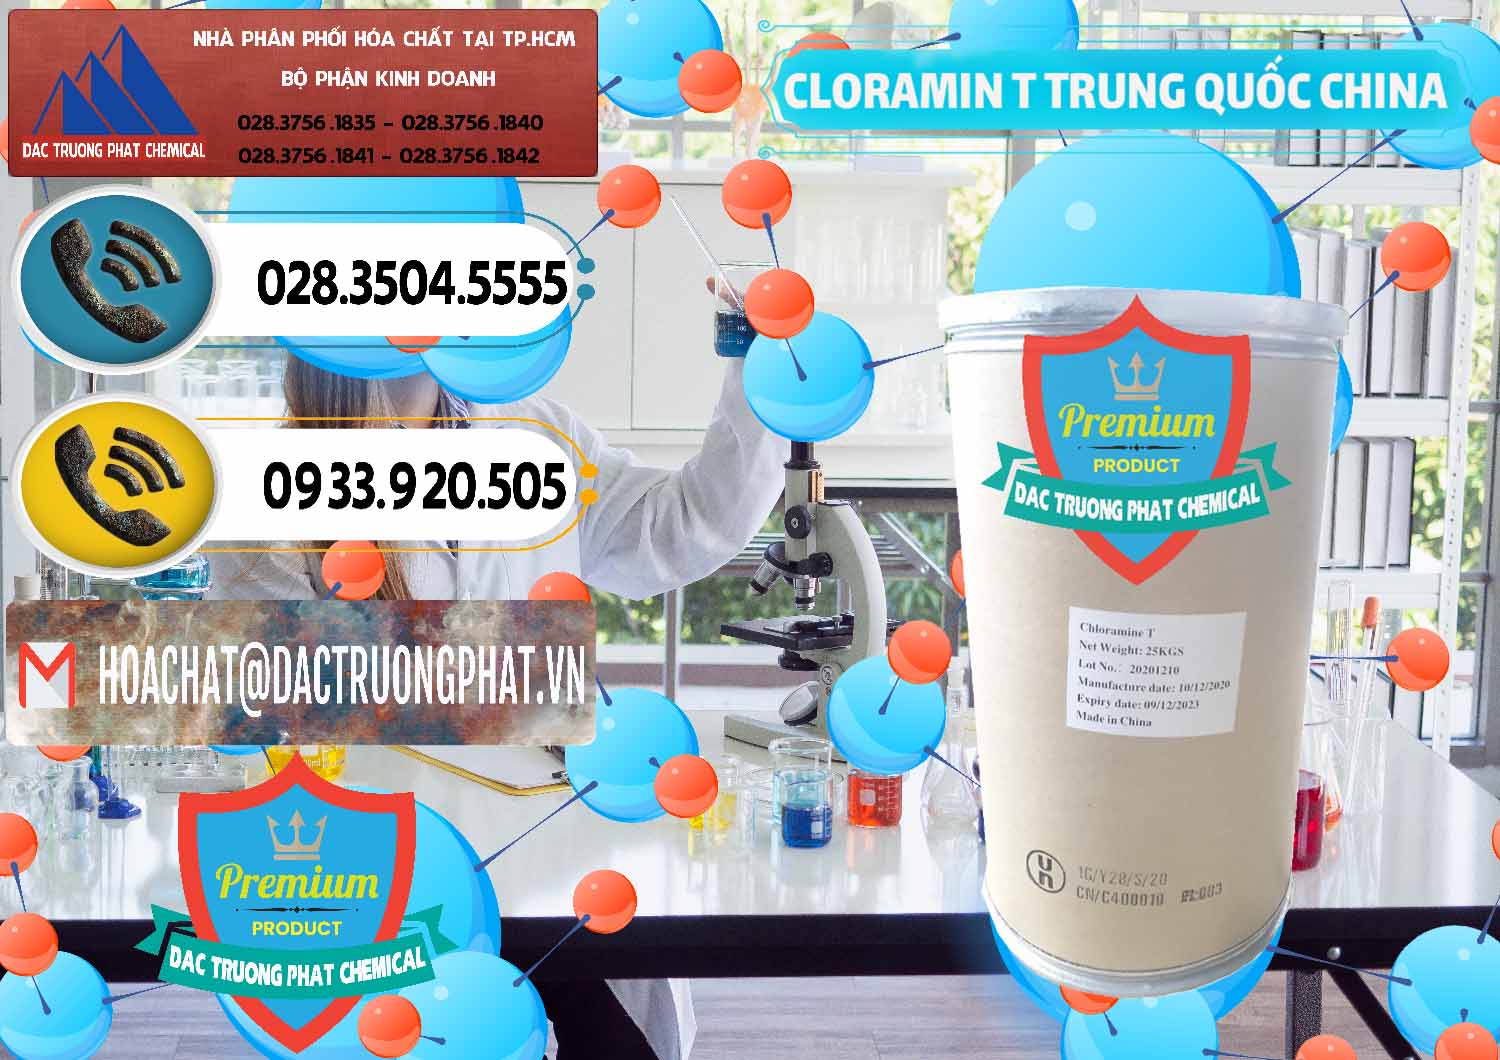 Chuyên cung cấp ( bán ) Cloramin T Khử Trùng, Diệt Khuẩn Trung Quốc China - 0301 - Công ty chuyên phân phối ( nhập khẩu ) hóa chất tại TP.HCM - hoachatdetnhuom.vn